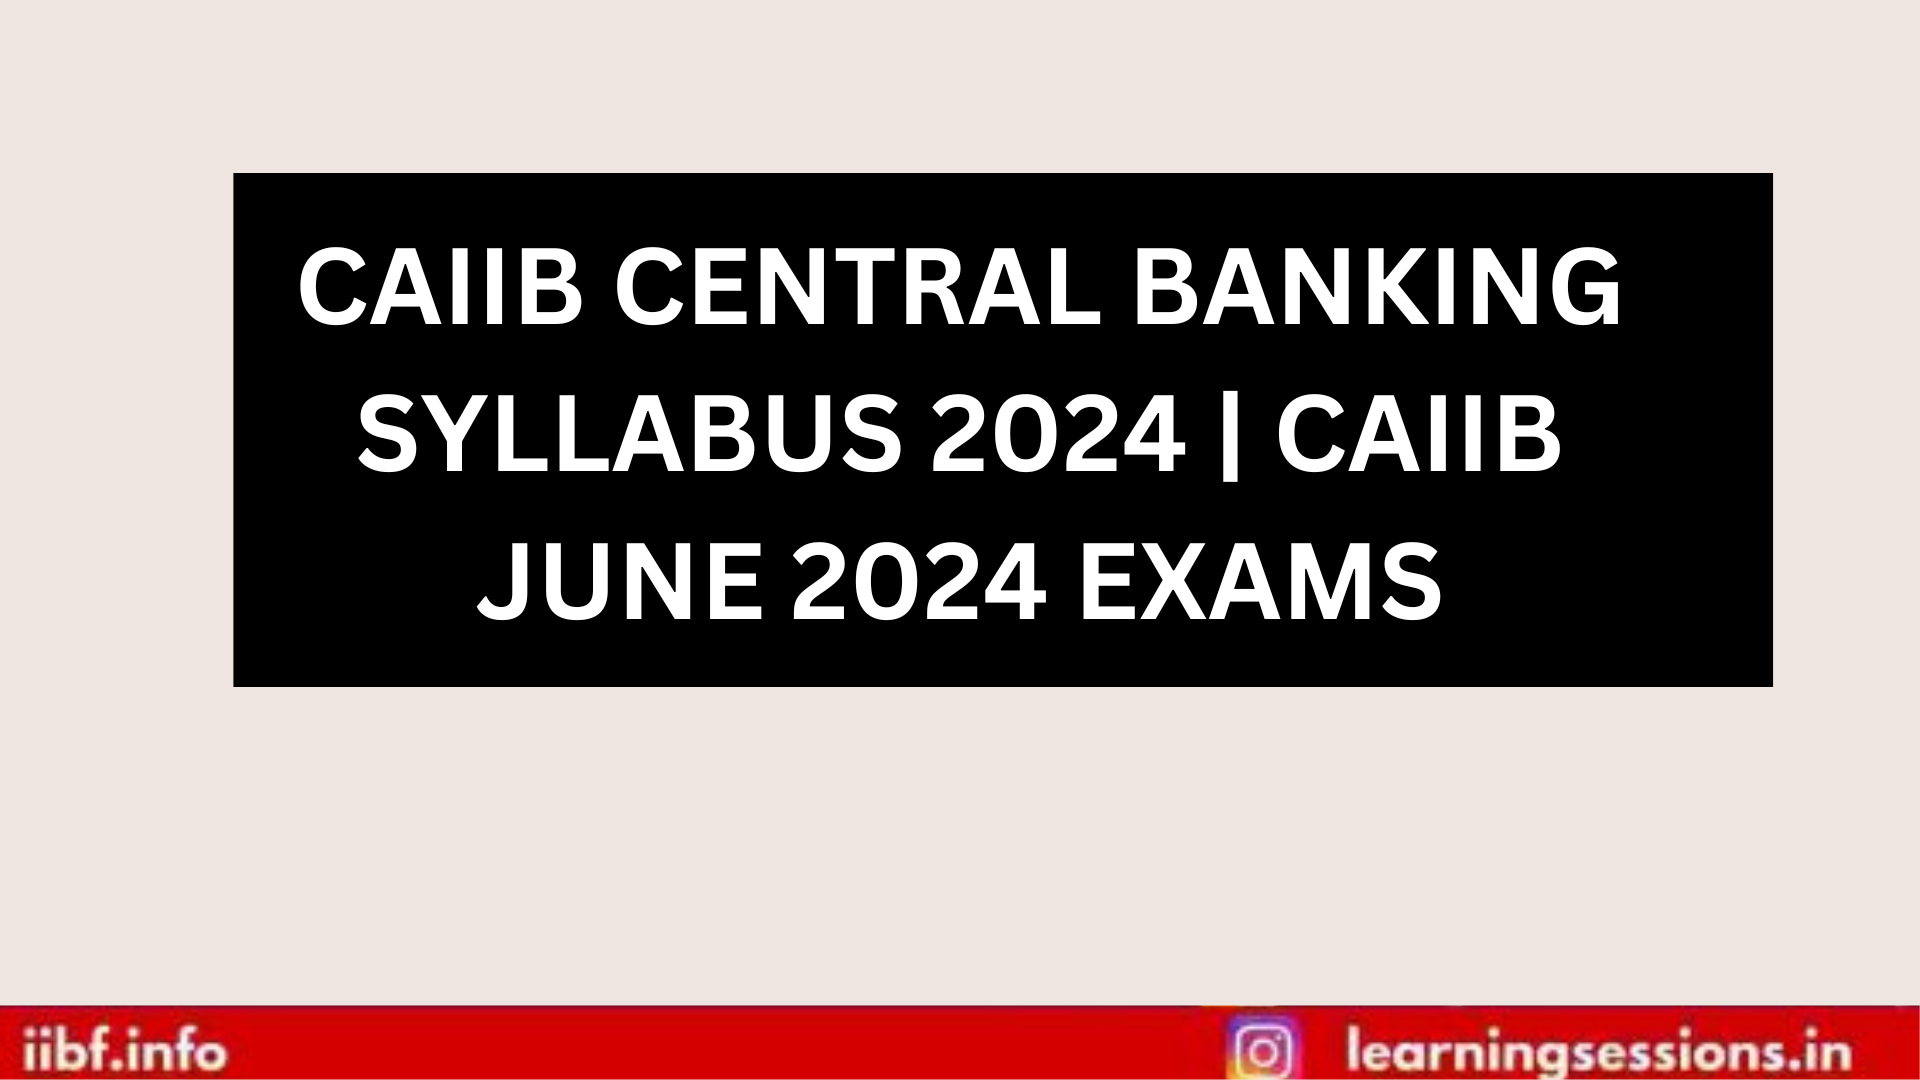 CAIIB CENTRAL BANKING SYLLABUS 2024 | CAIIB JUNE 2024 EXAMS